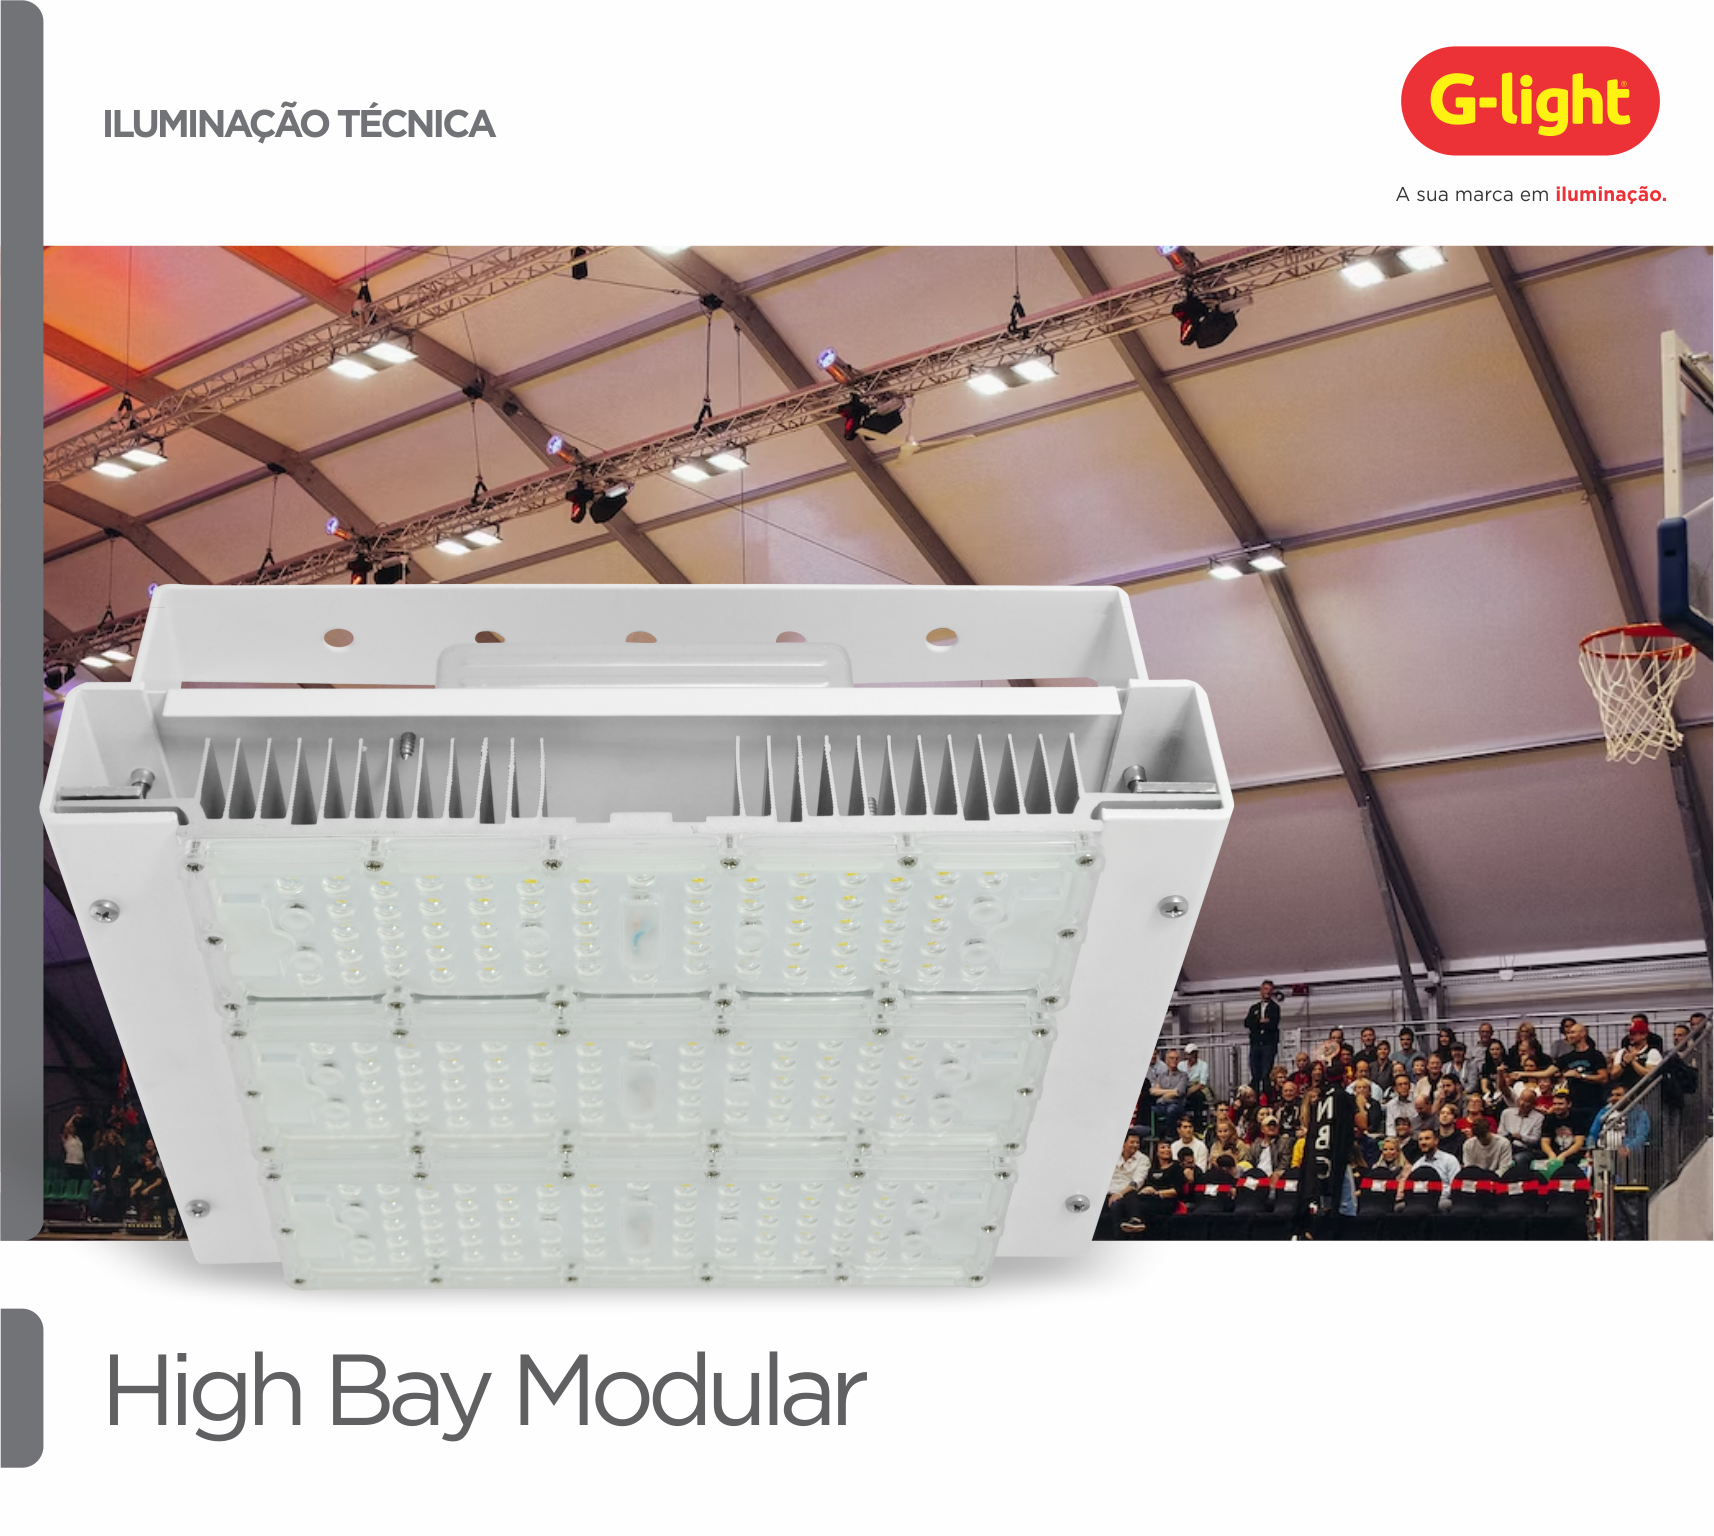 High Bay Modular